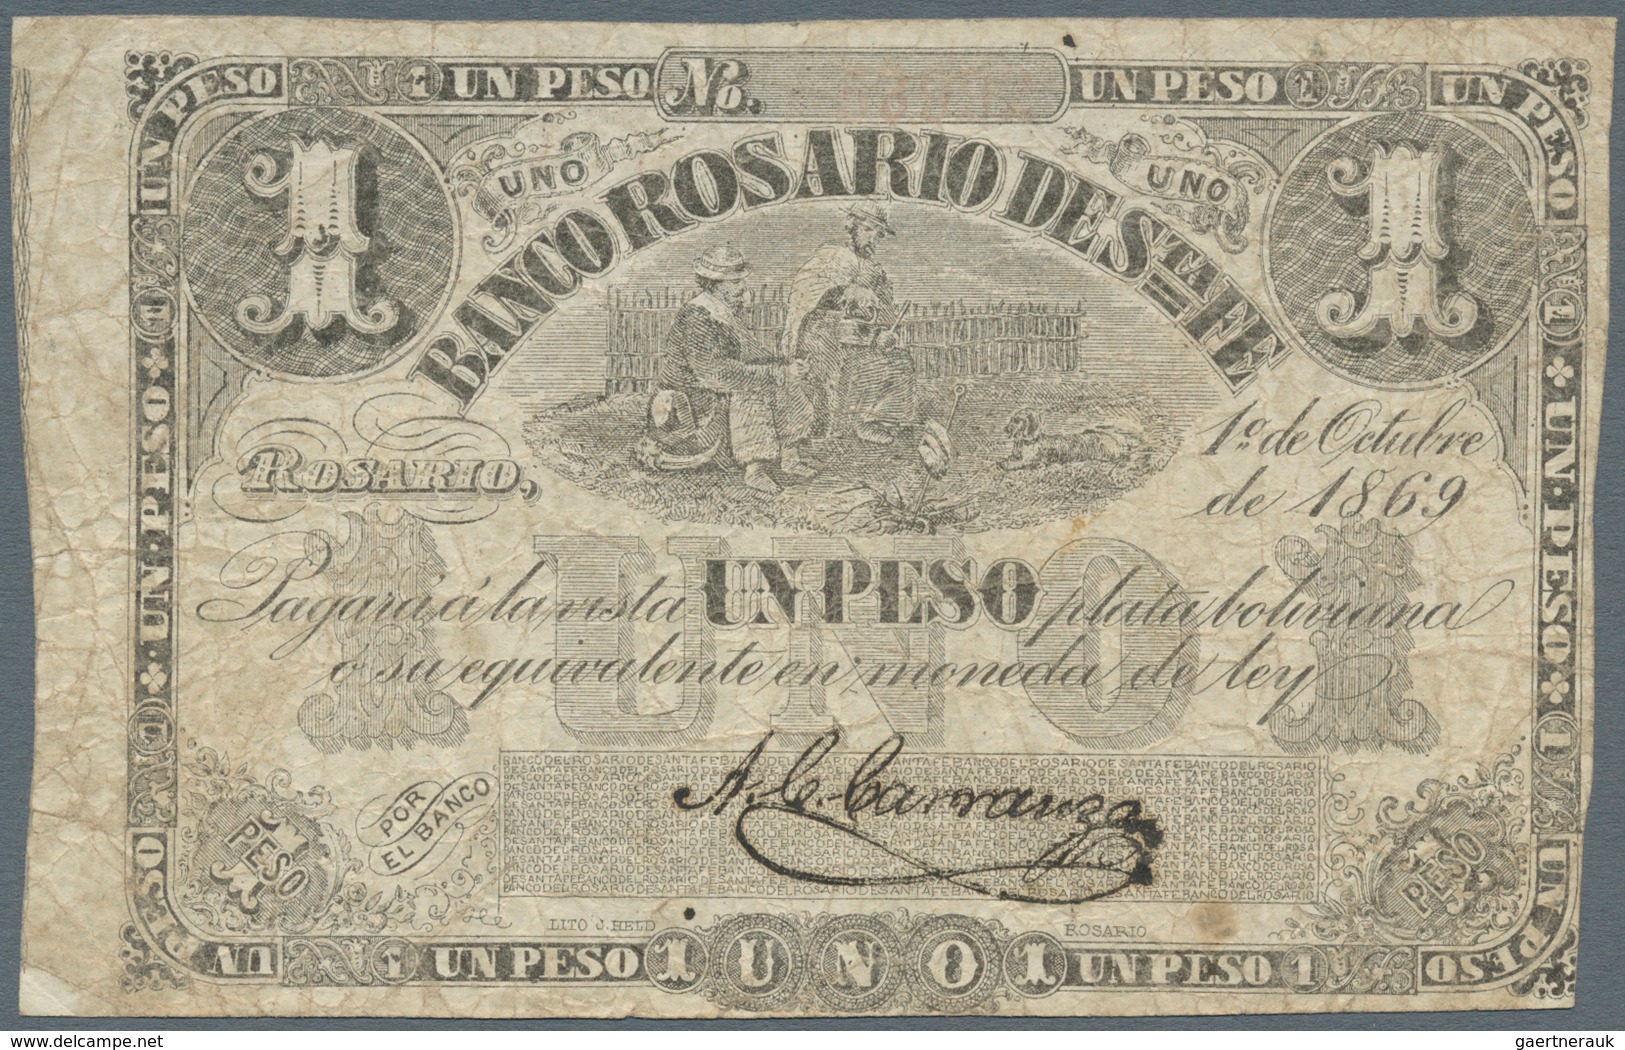 Argentina / Argentinien: Banco Rosario De Santa Fe 1 Peso 1869, P.S1854a, Still Nice Note In Origina - Argentinien